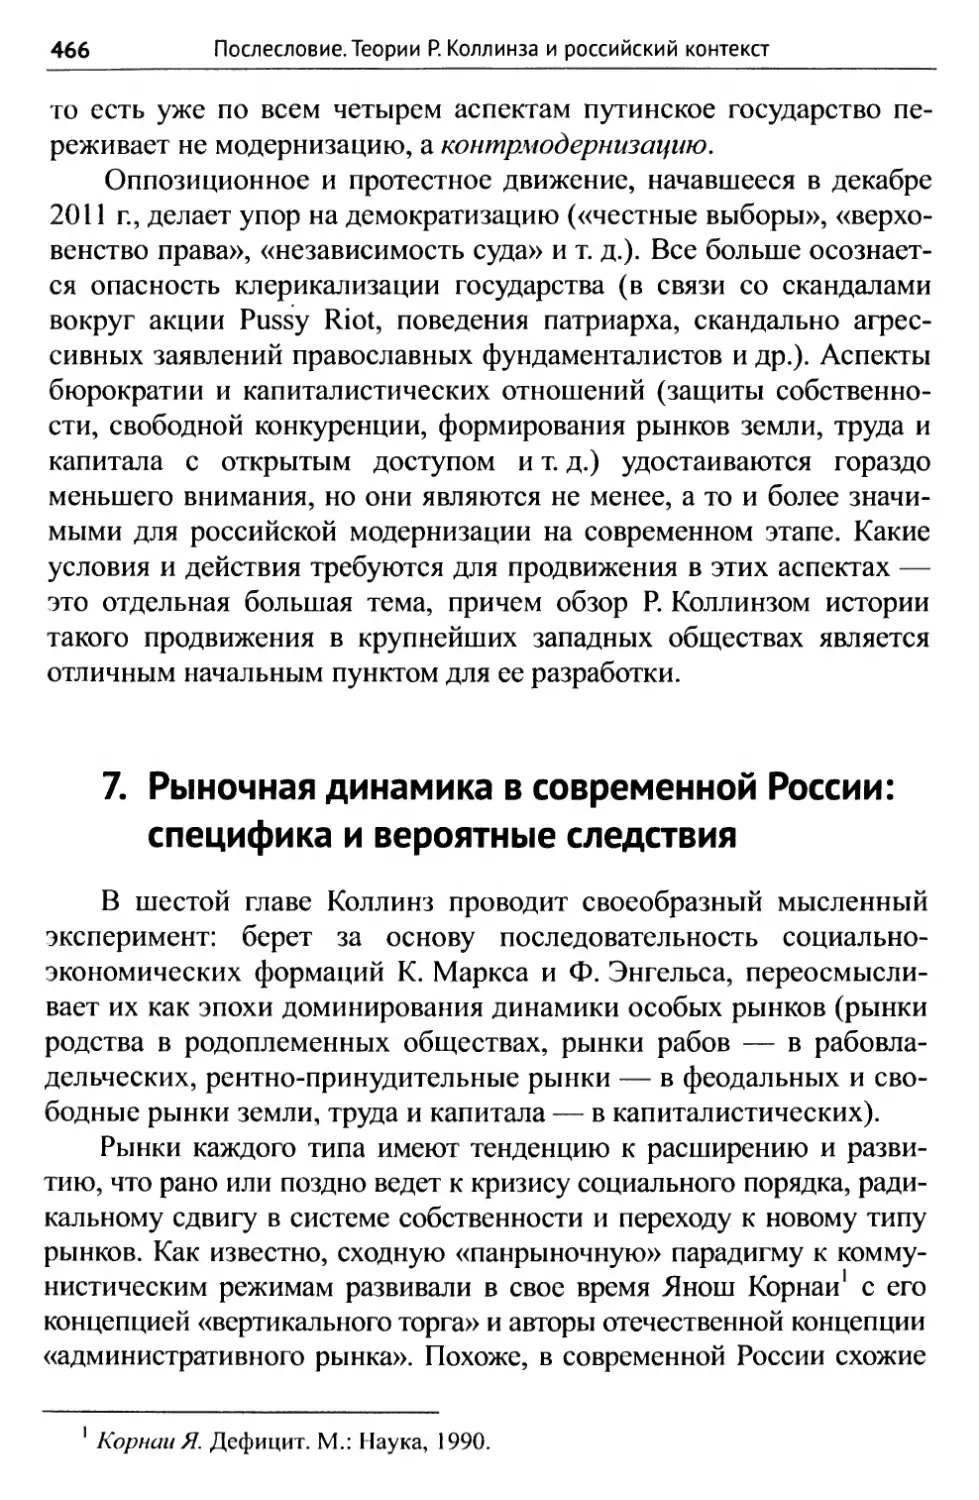 7. Рыночная динамика в современной России: специфика и вероятные следствия